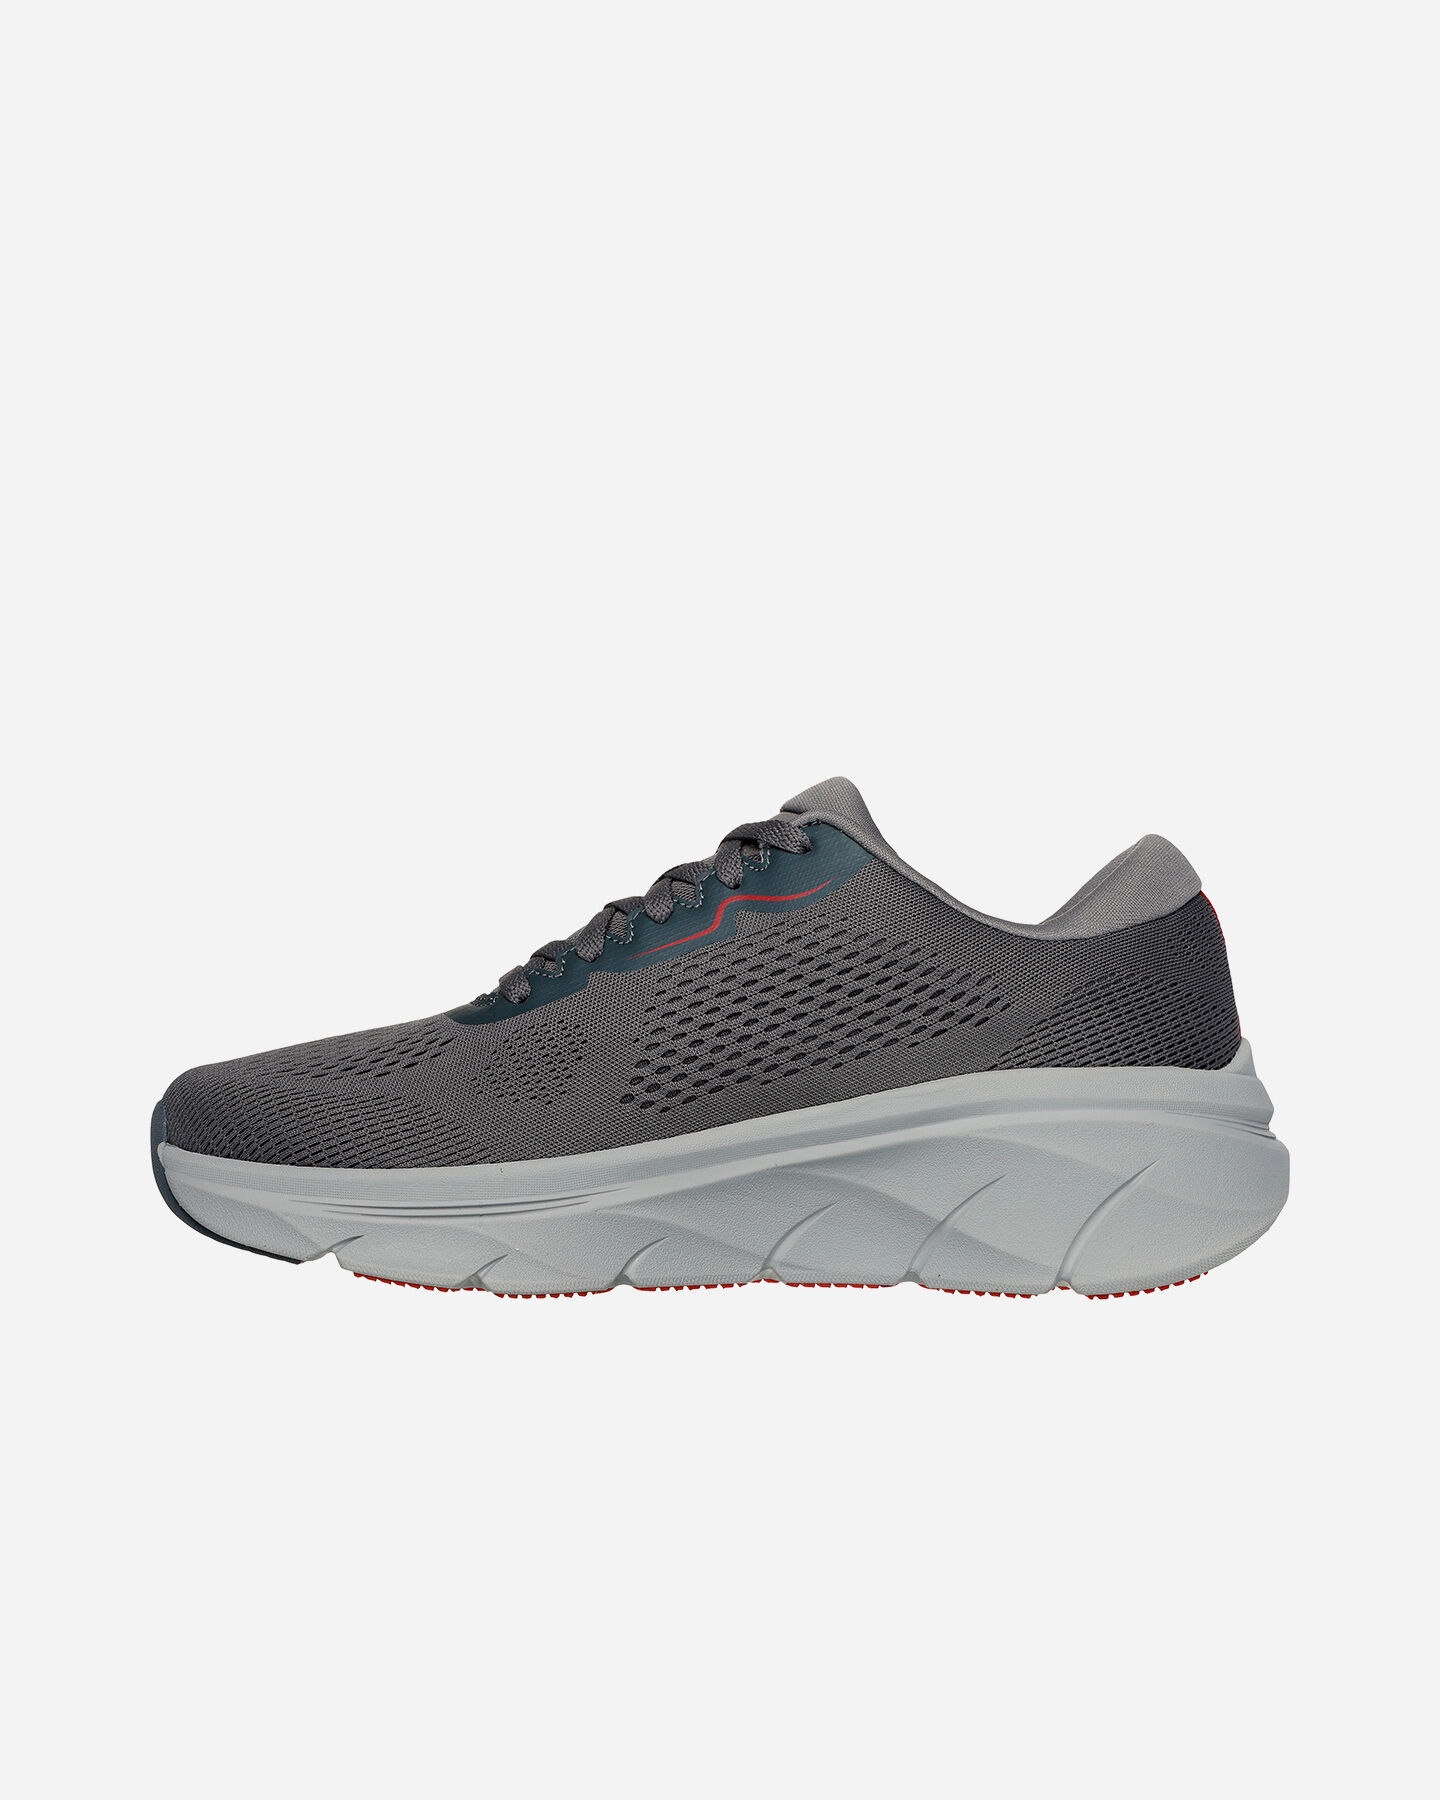  Scarpe sneakers SKECHERS D LUX WALKER 2.0 M S5669396|CCRD|40 scatto 4